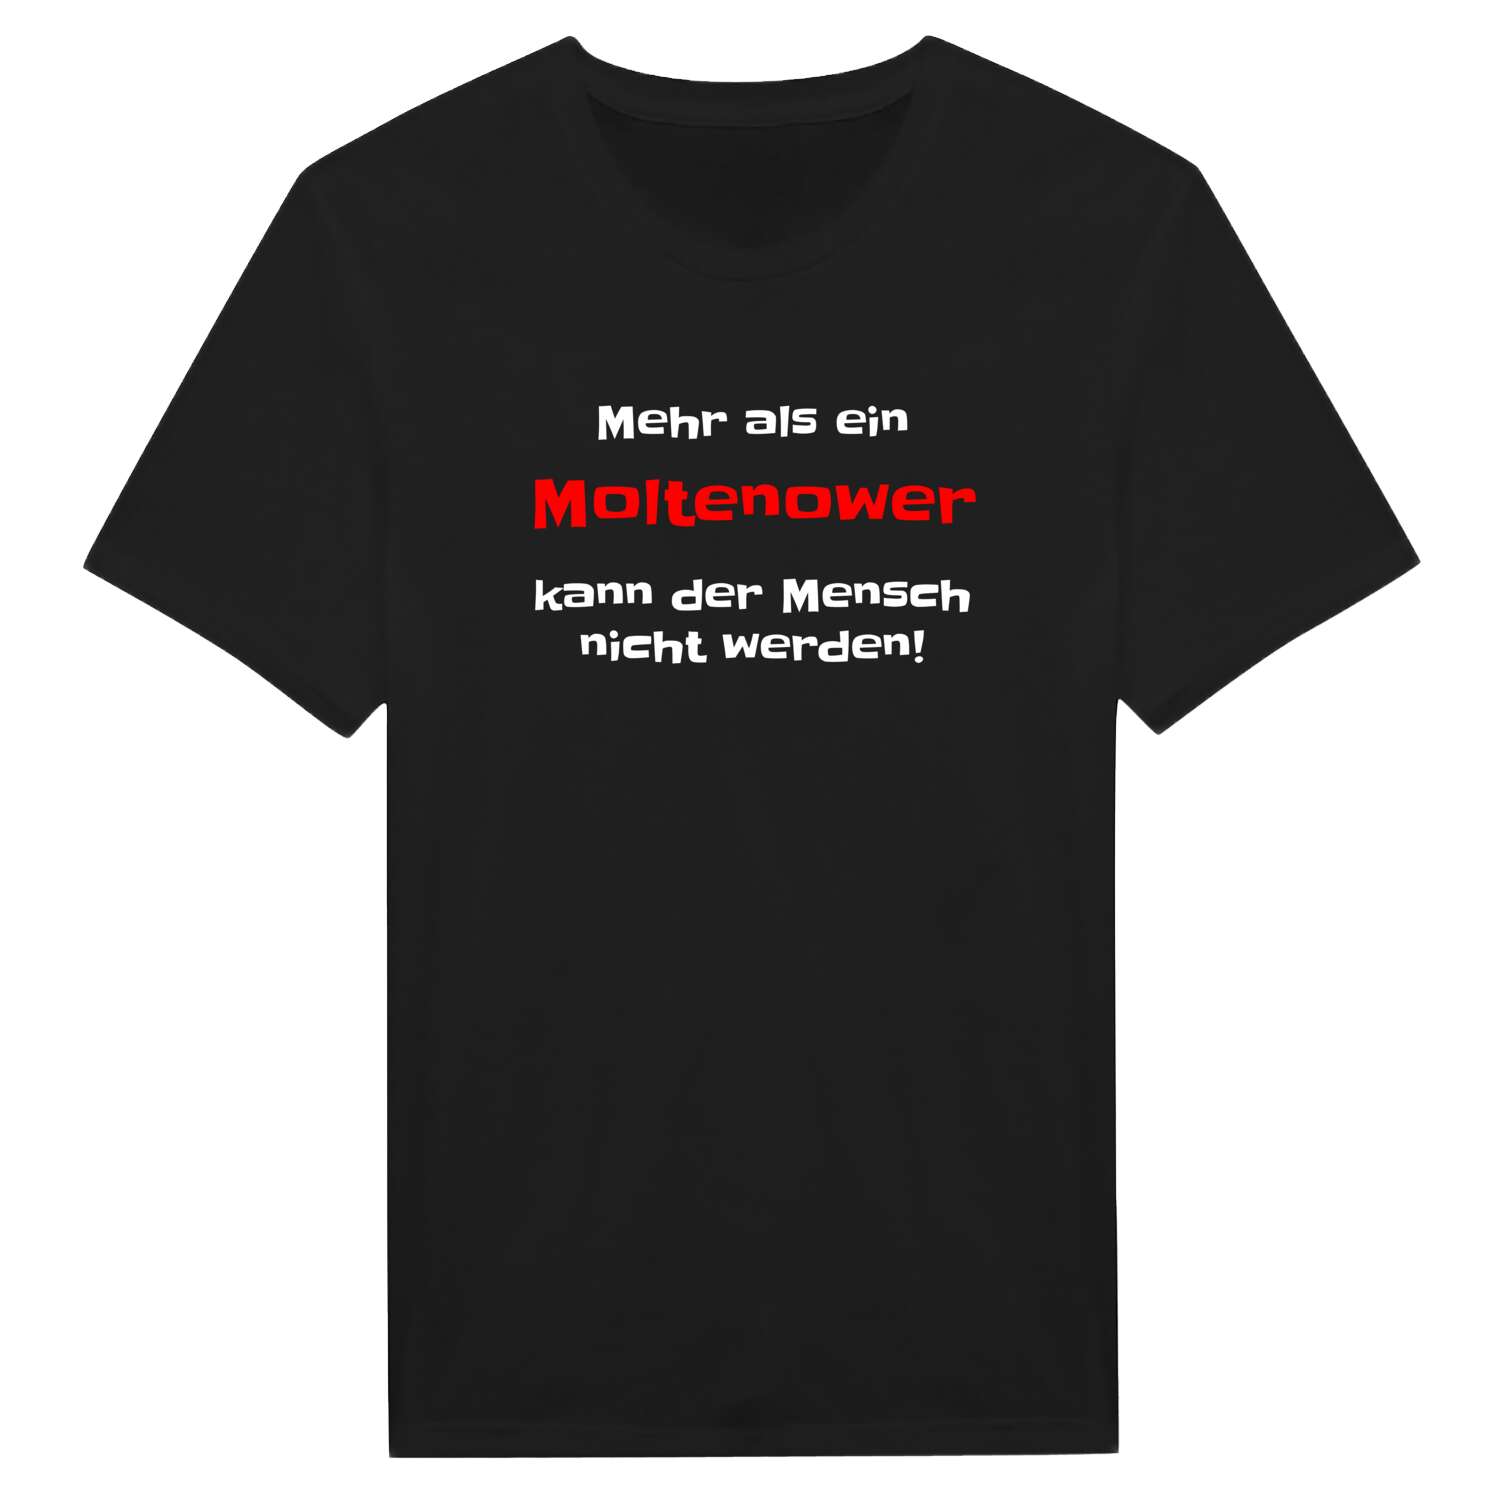 Moltenow T-Shirt »Mehr als ein«